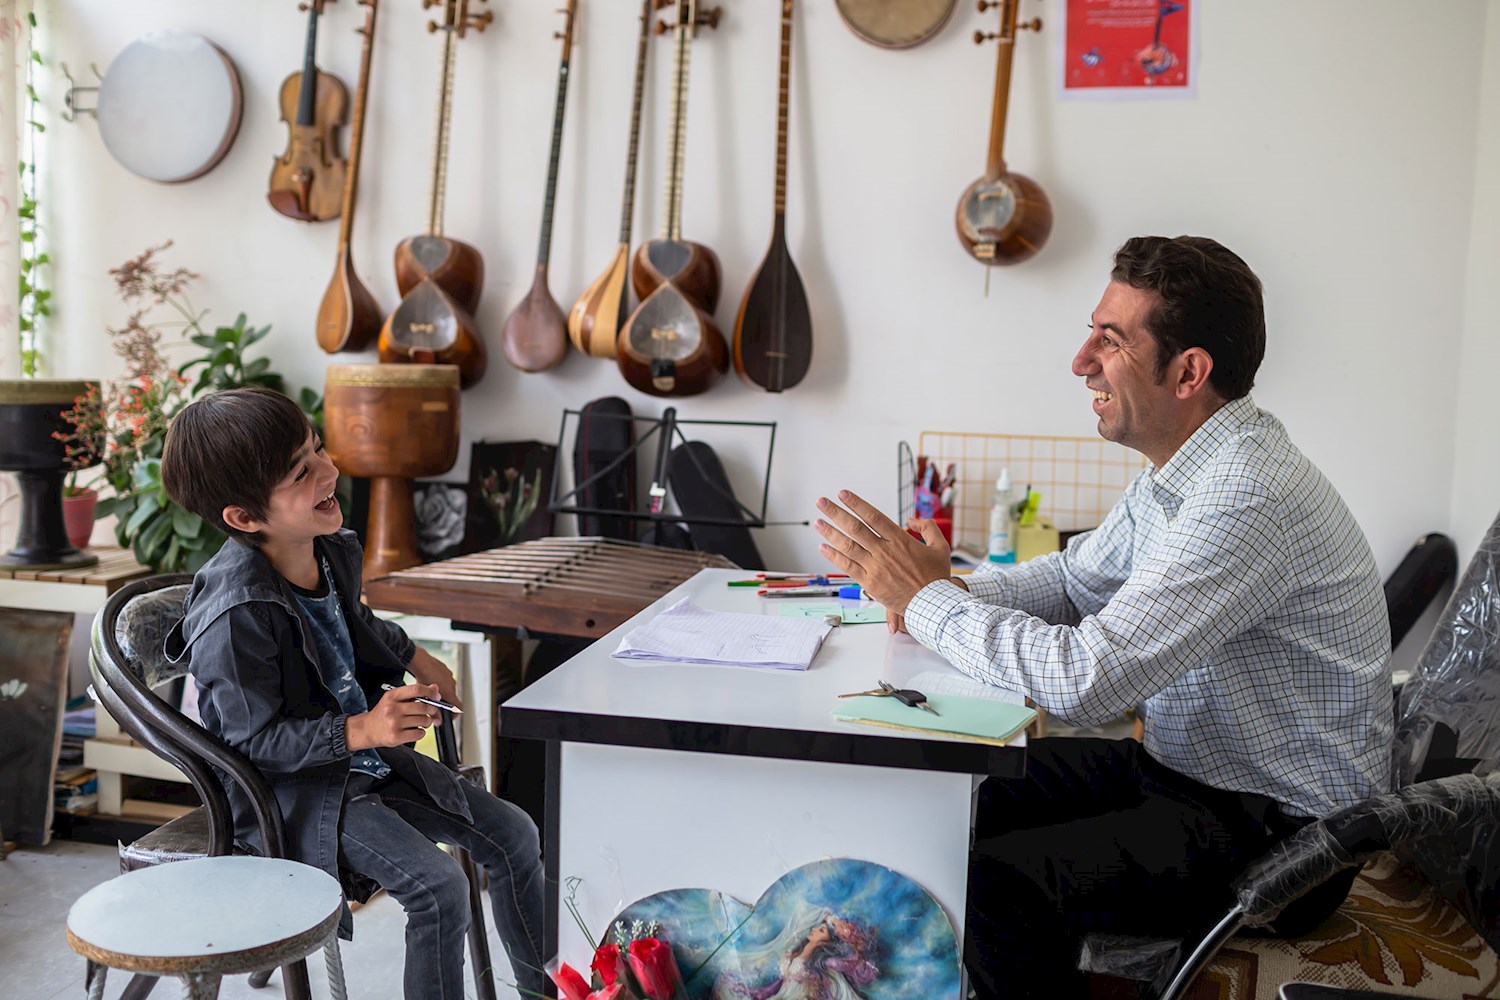 بهمن خانپور سه سال است که آموزشگاه موسیقی خود را تاسیس کرده است، 6 ساز را به صورت تخصصی آموزش می دهد و از شاگرد 6ساله تا 60ساله هنرجو دارد.